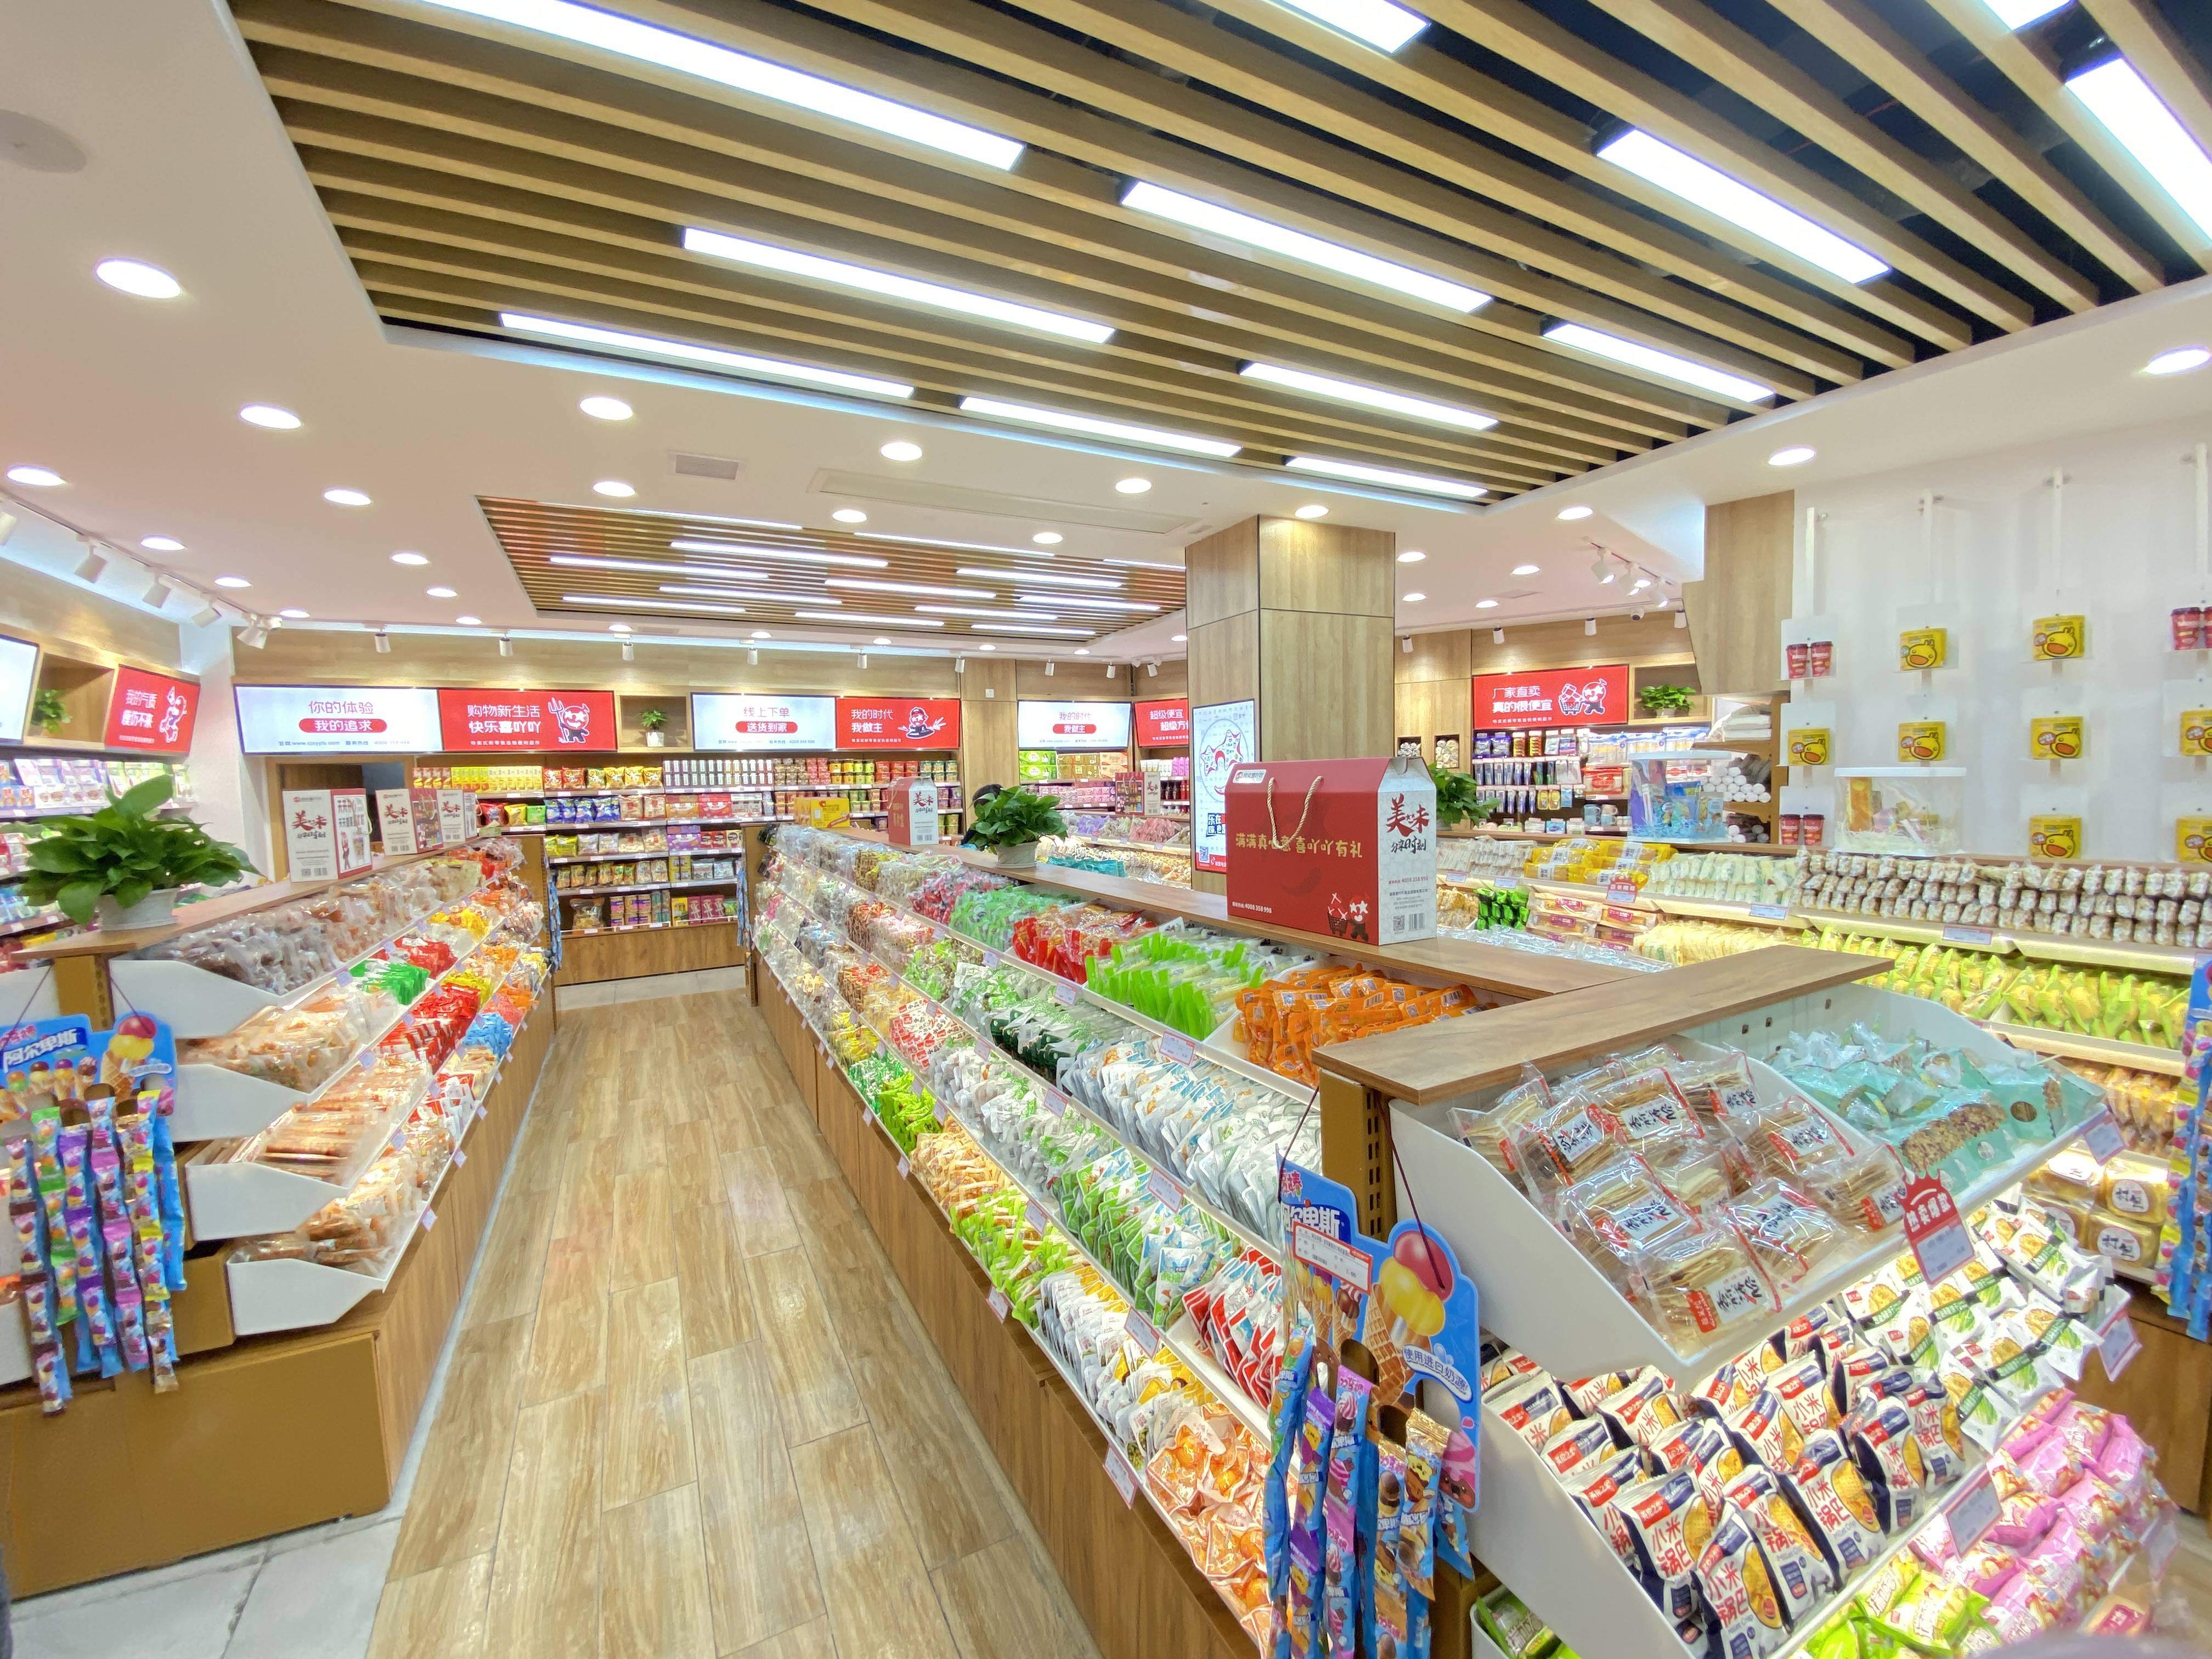 社区新零售超市连锁门店增幅又超预期超级喜吖吖未来可期